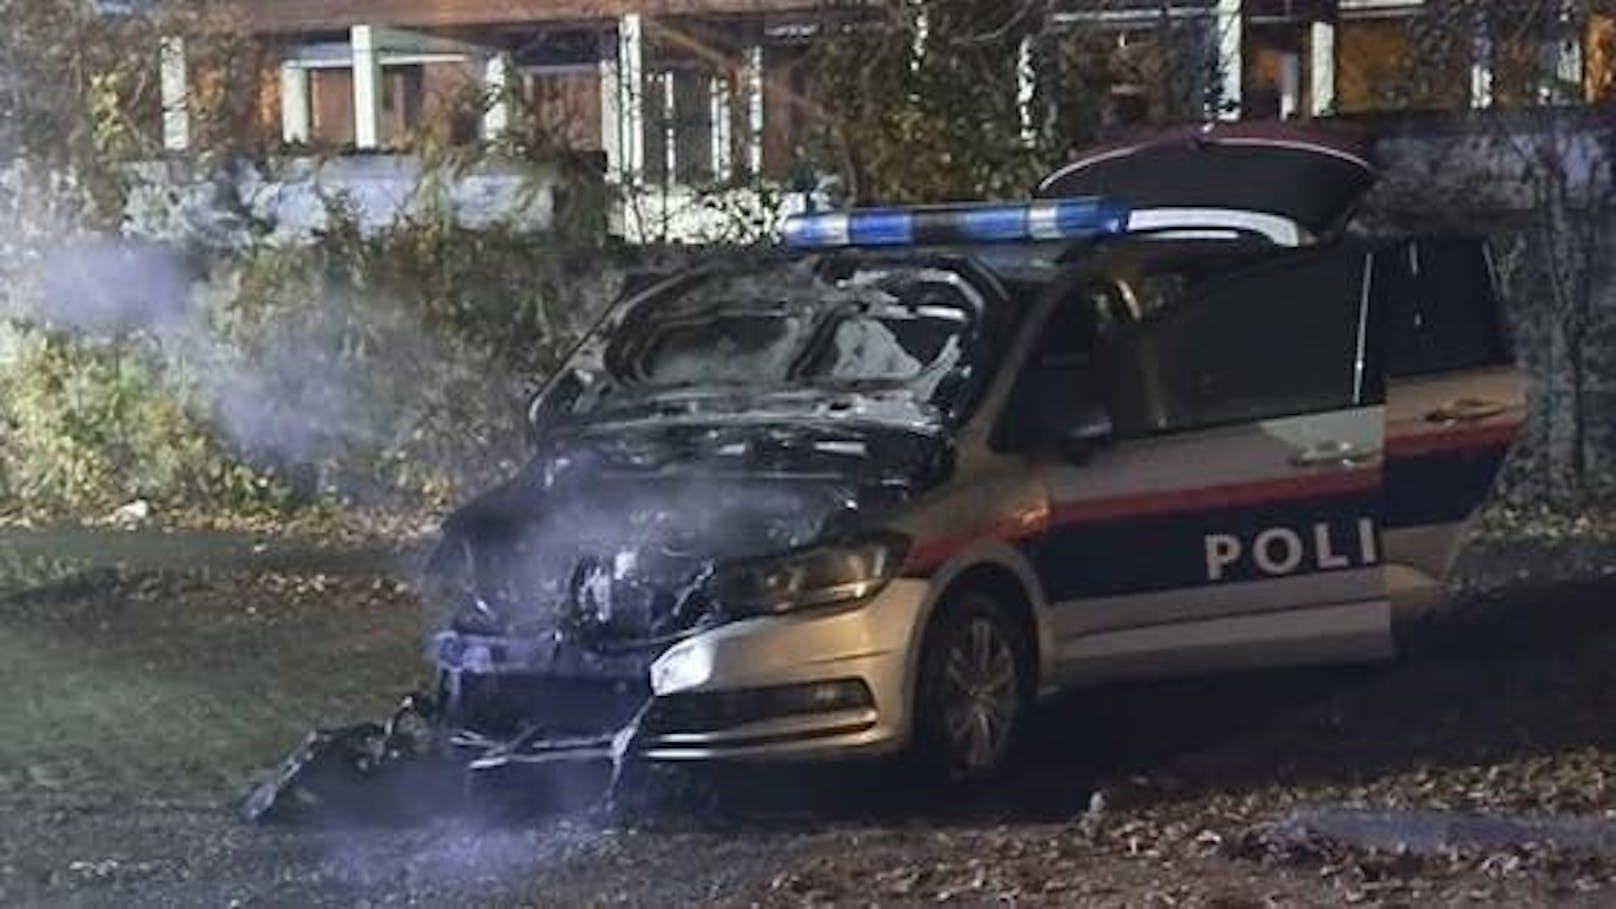 Mitte November wurde im Linzer Stadtteil Ebelsberg ein Polizeiauto angezündet. Laut Polizei waren Beteiligte dieser Tat nun auch bei den Halloween-Krawallen wieder dabei.